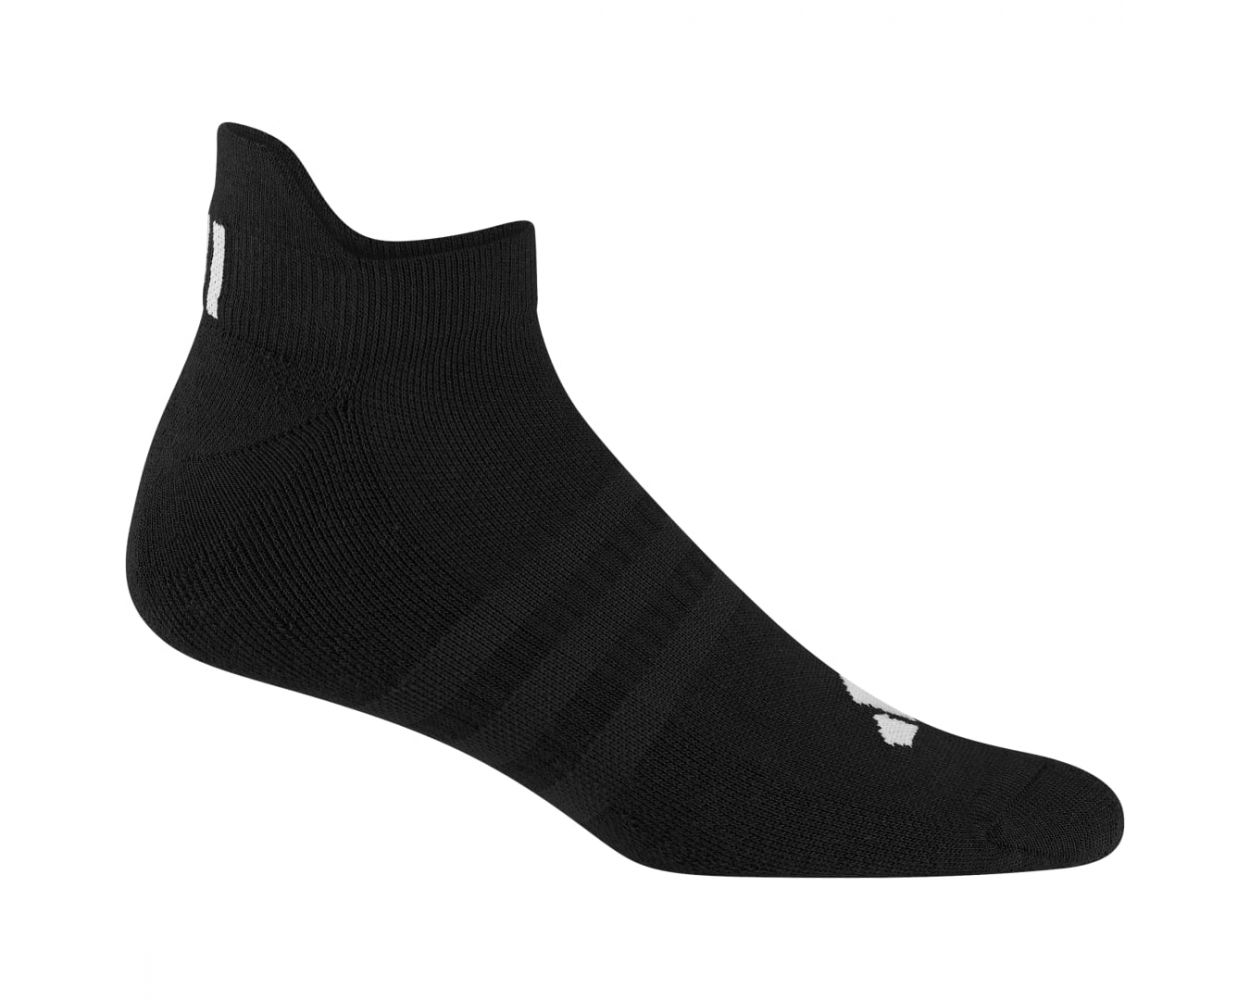 Adidas Men's Basic Ankle Socks - Black